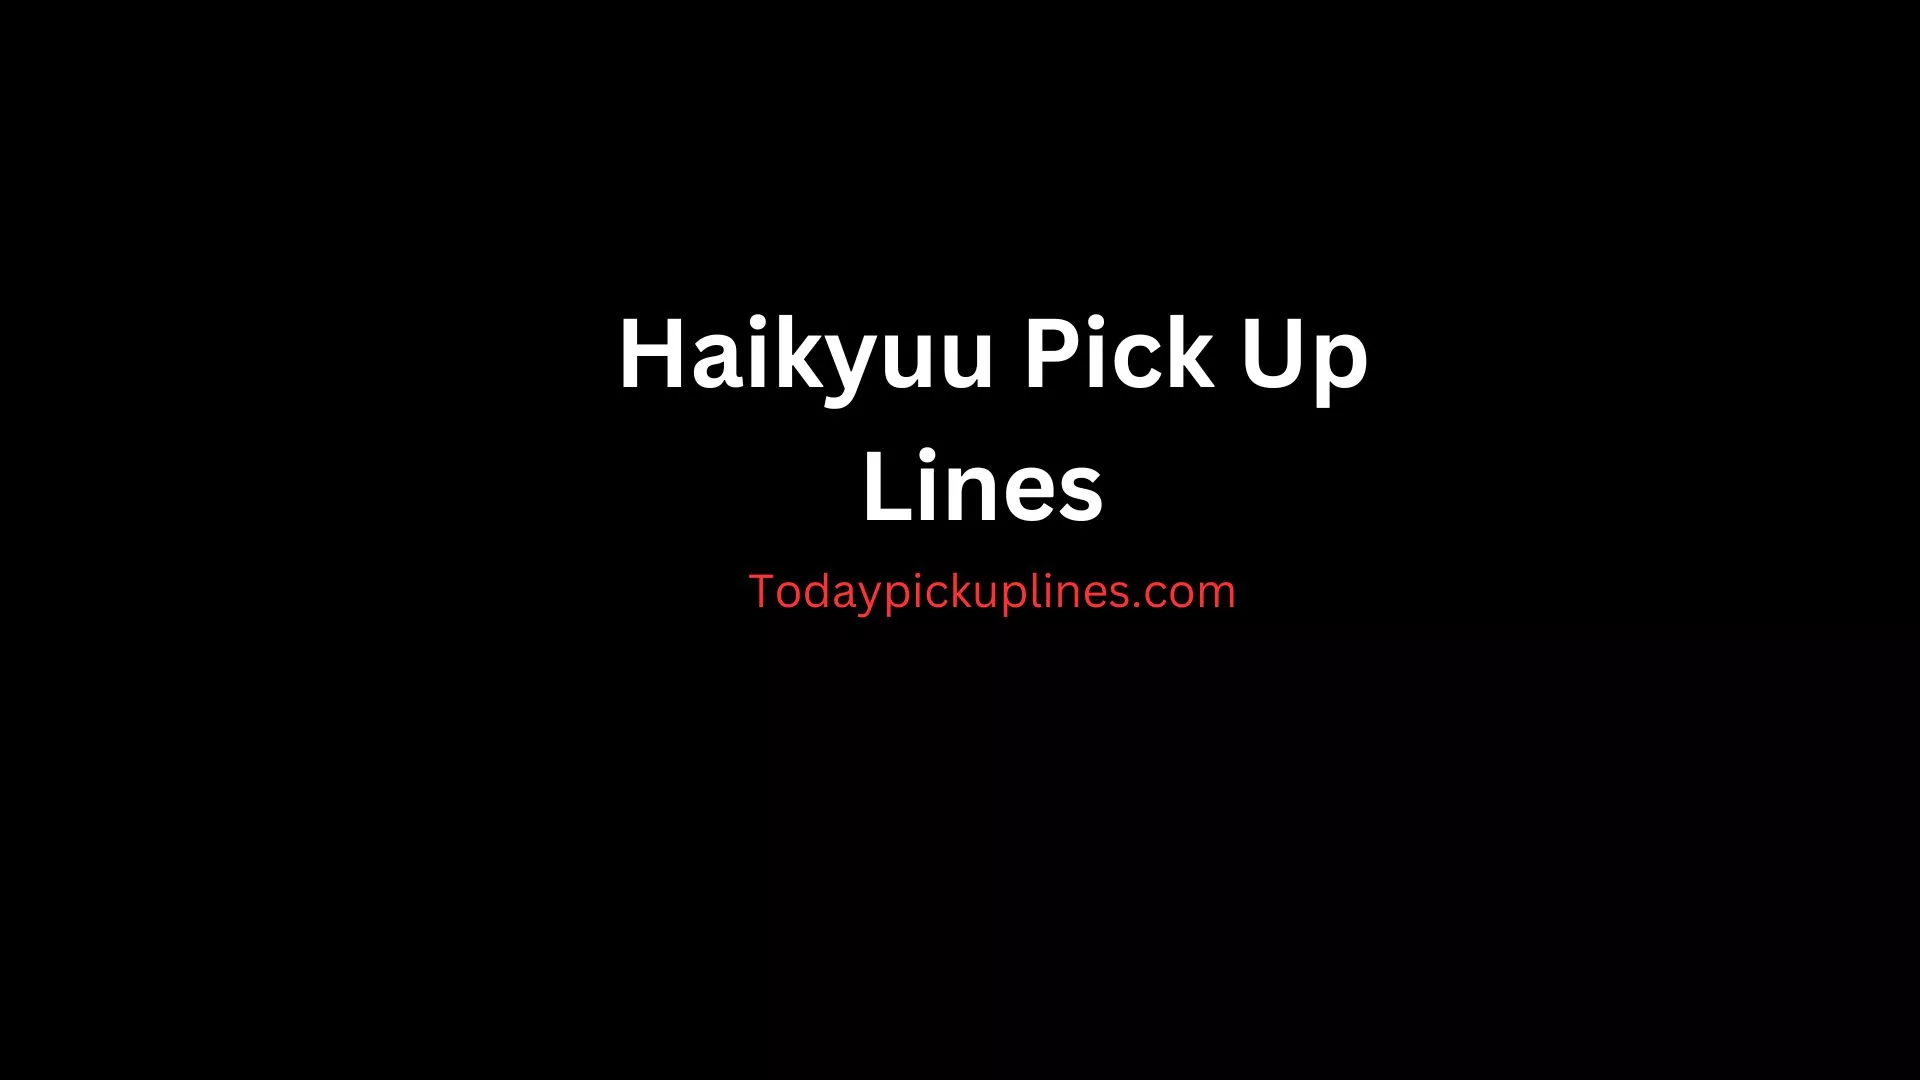 Haikyuu Pick Up Lines